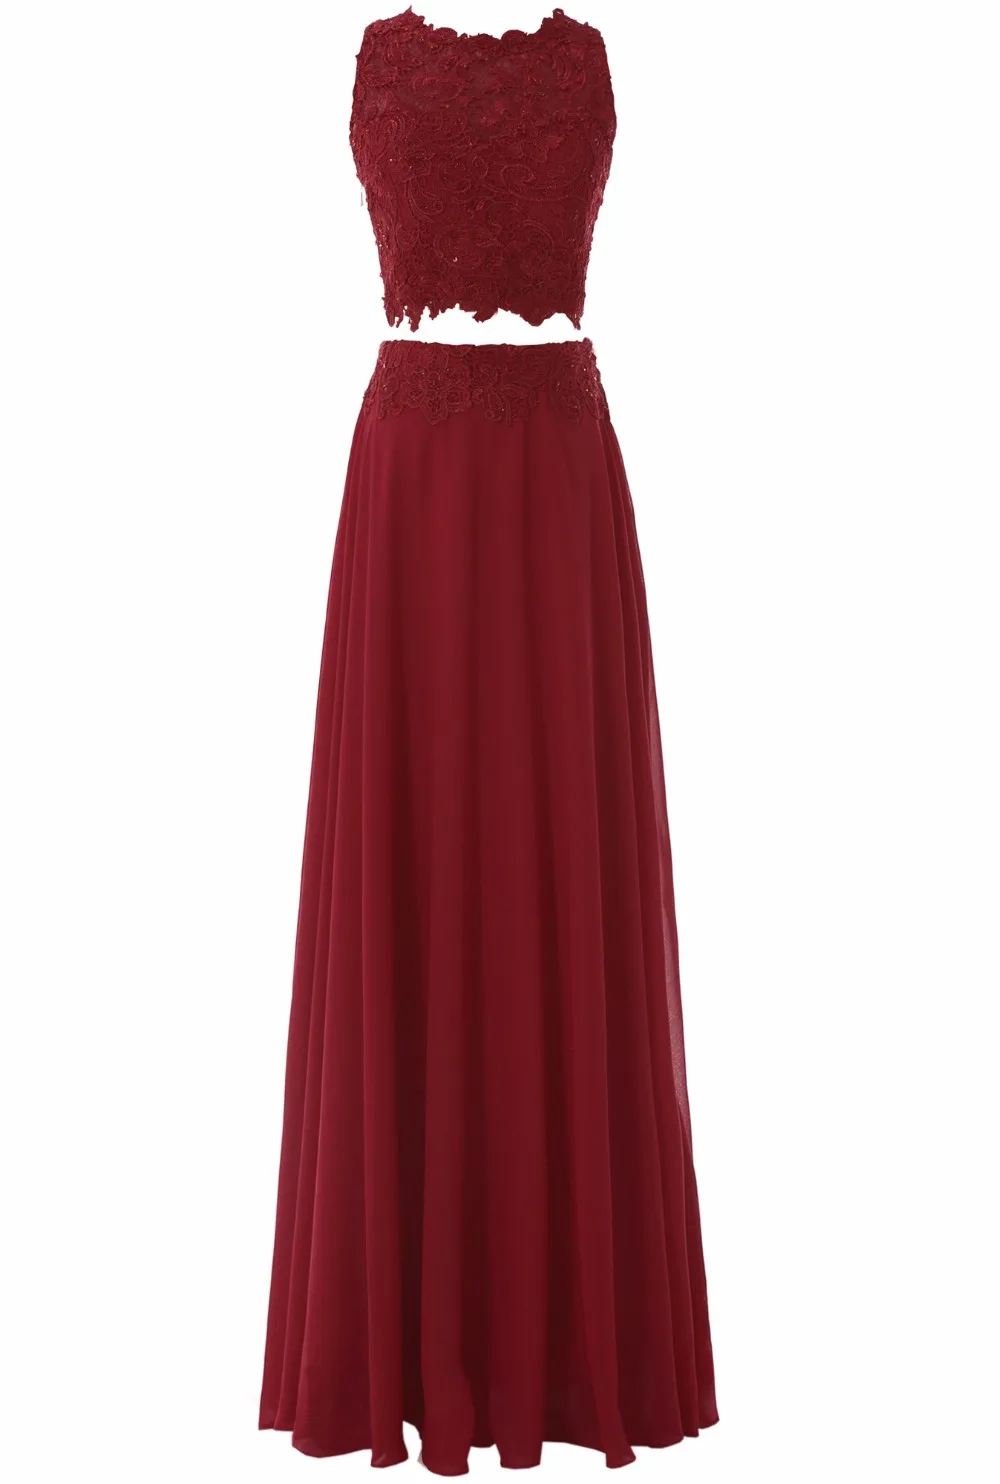 Линия шифон с круглым вырезом Chifon длинный Двойка платье для выпускного вечера 2017 красное кружевное вечернее платье Аппликации vestido de fiesta